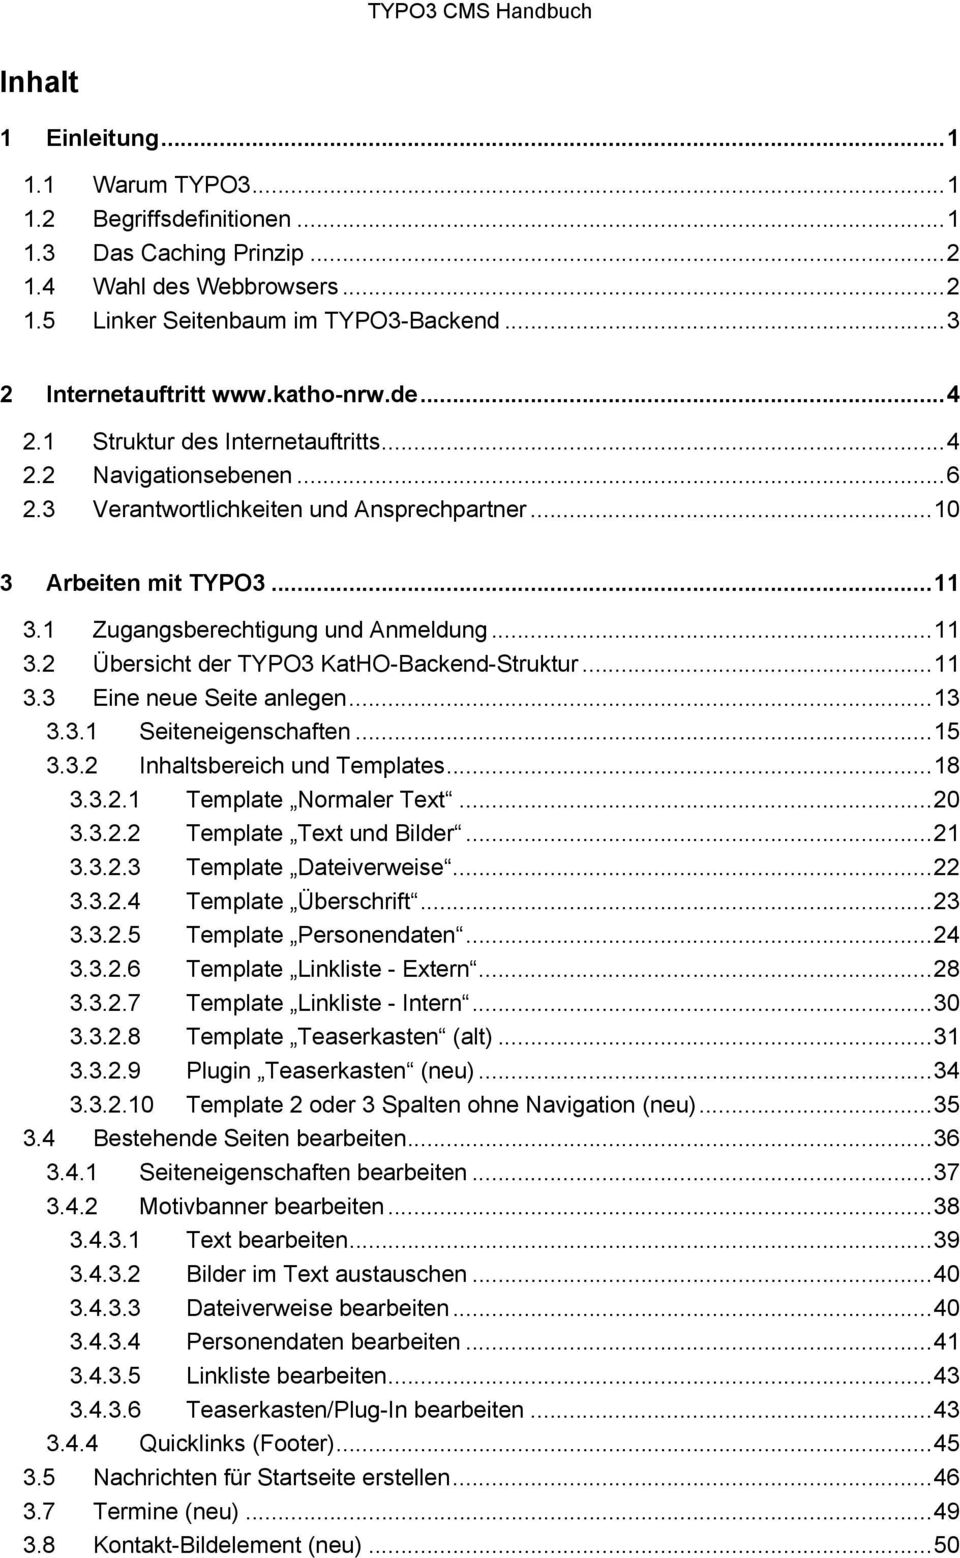 .. 11 3.2 Übersicht der TYPO3 KatHO-Backend-Struktur... 11 3.3 Eine neue Seite anlegen... 13 3.3.1 Seiteneigenschaften... 15 3.3.2 Inhaltsbereich und Templates... 18 3.3.1 Template Normaler Text.